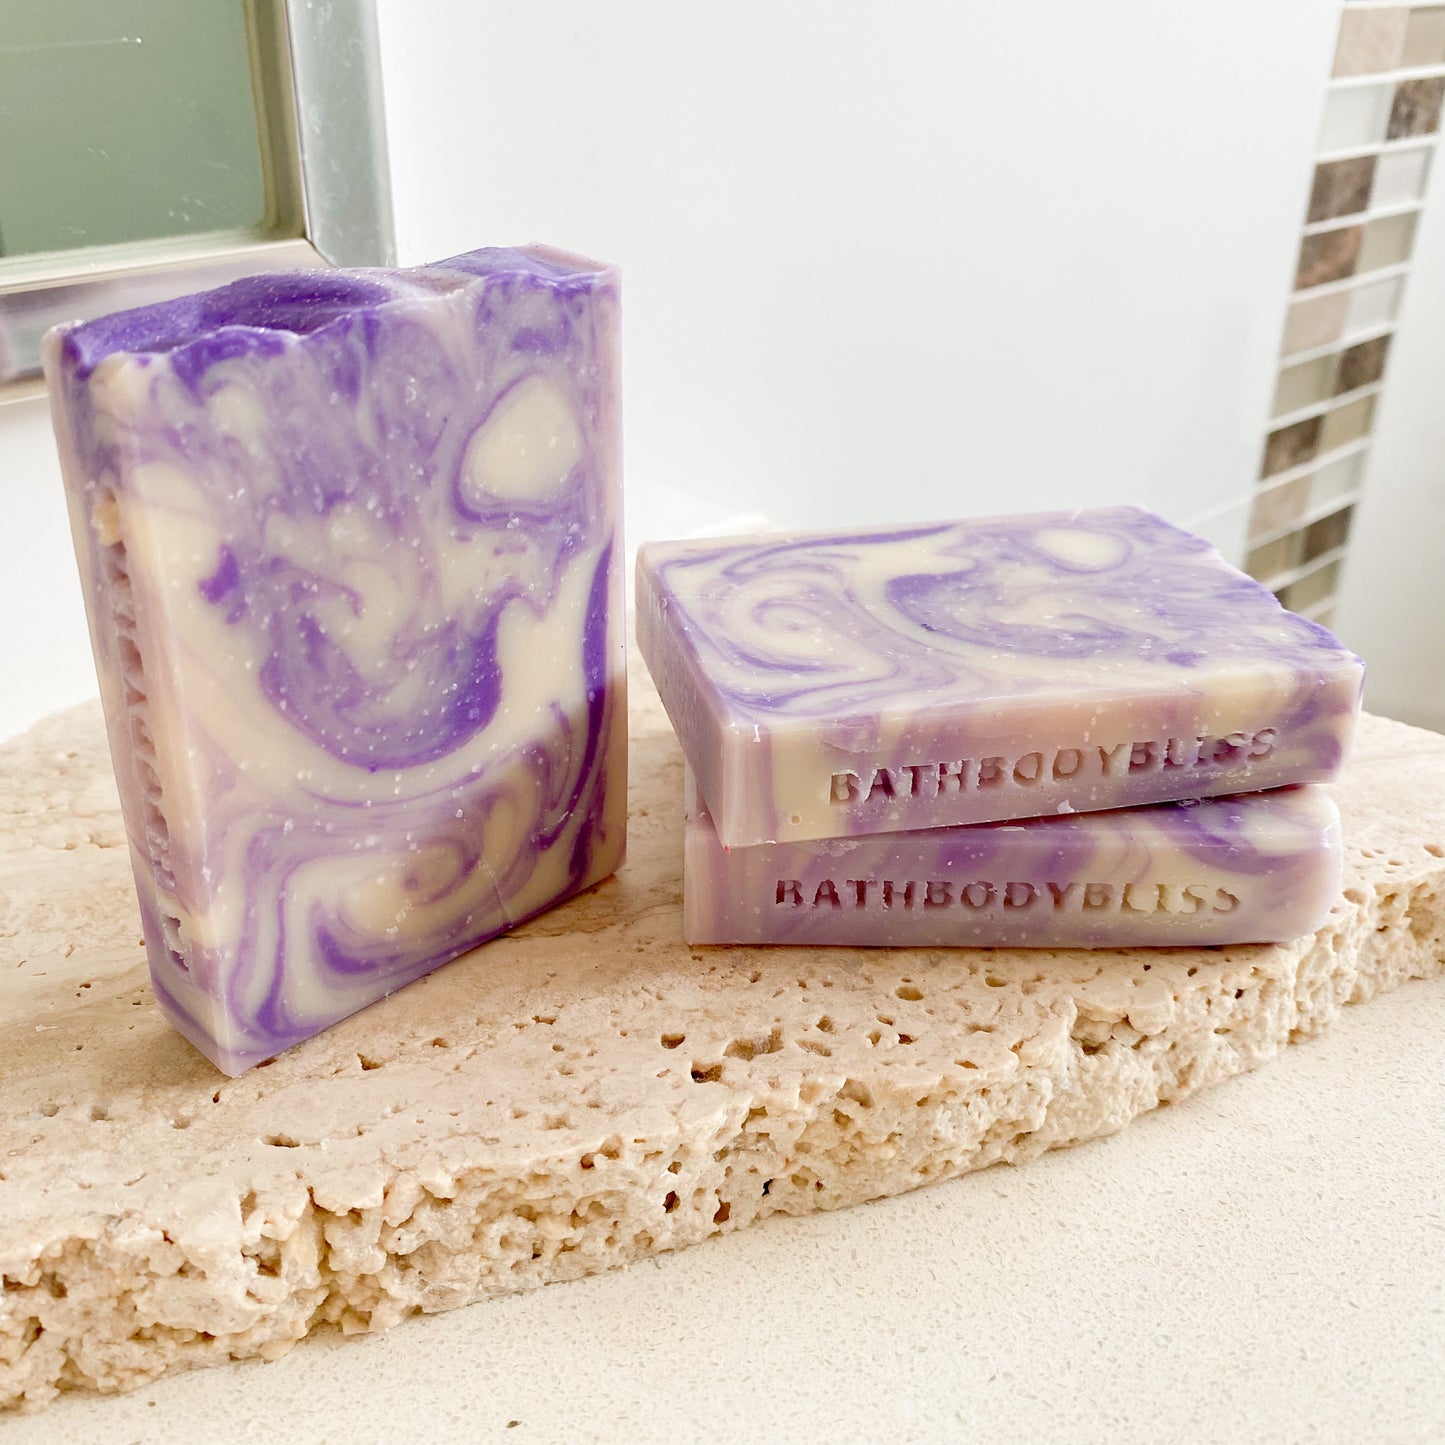 Goatsmilk Lavender - Natural Handmade Goatsmilk & Essential Oil Soap